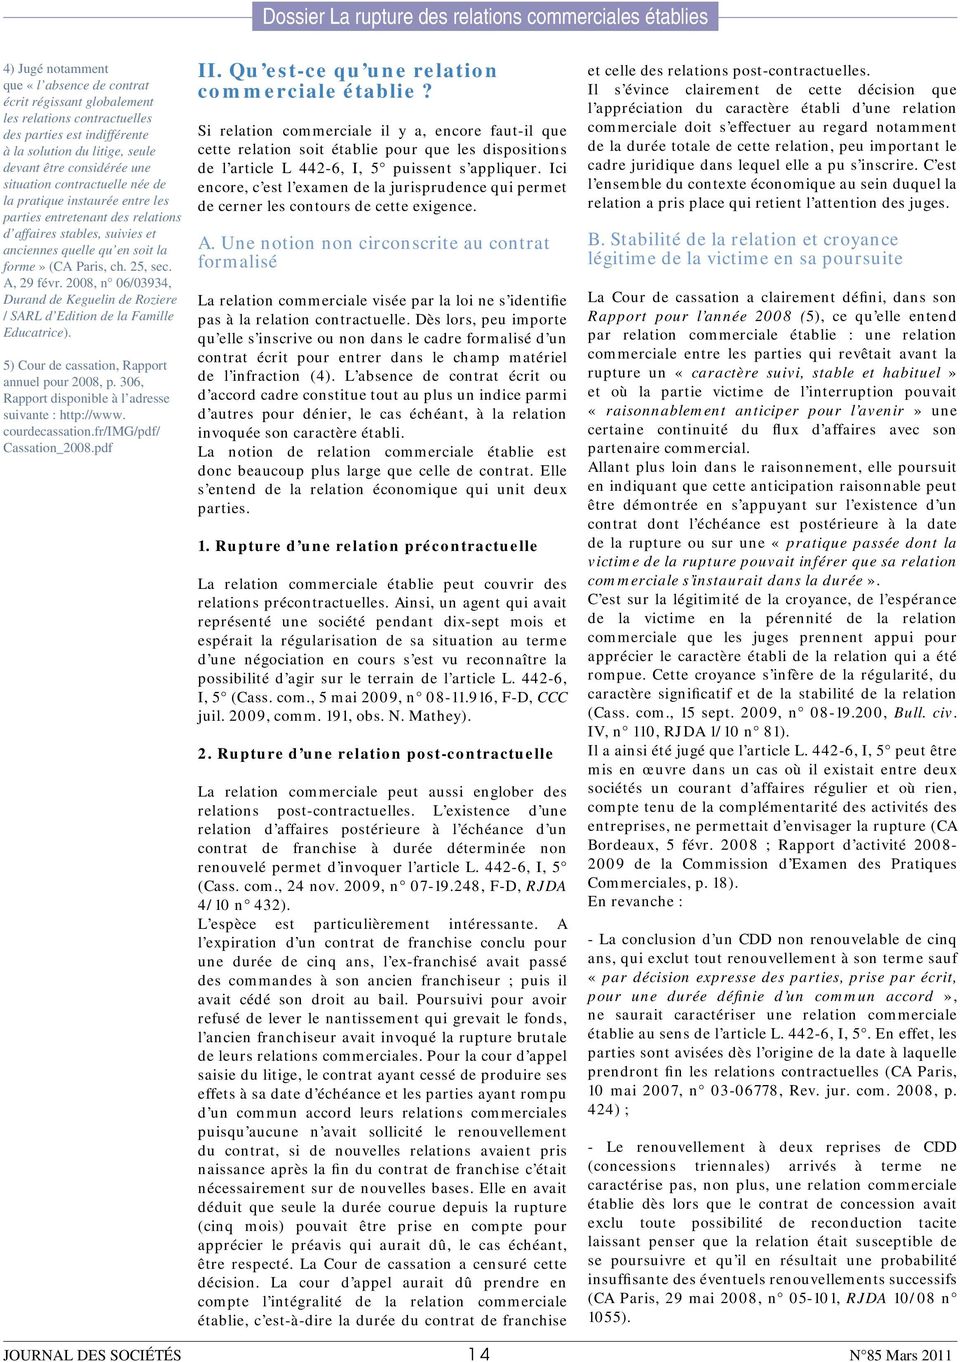 2008, n 06/03934, Durand de Keguelin de Roziere / SARL d Edition de la Famille Educatrice). 5) Cour de cassation, Rapport annuel pour 2008, p.